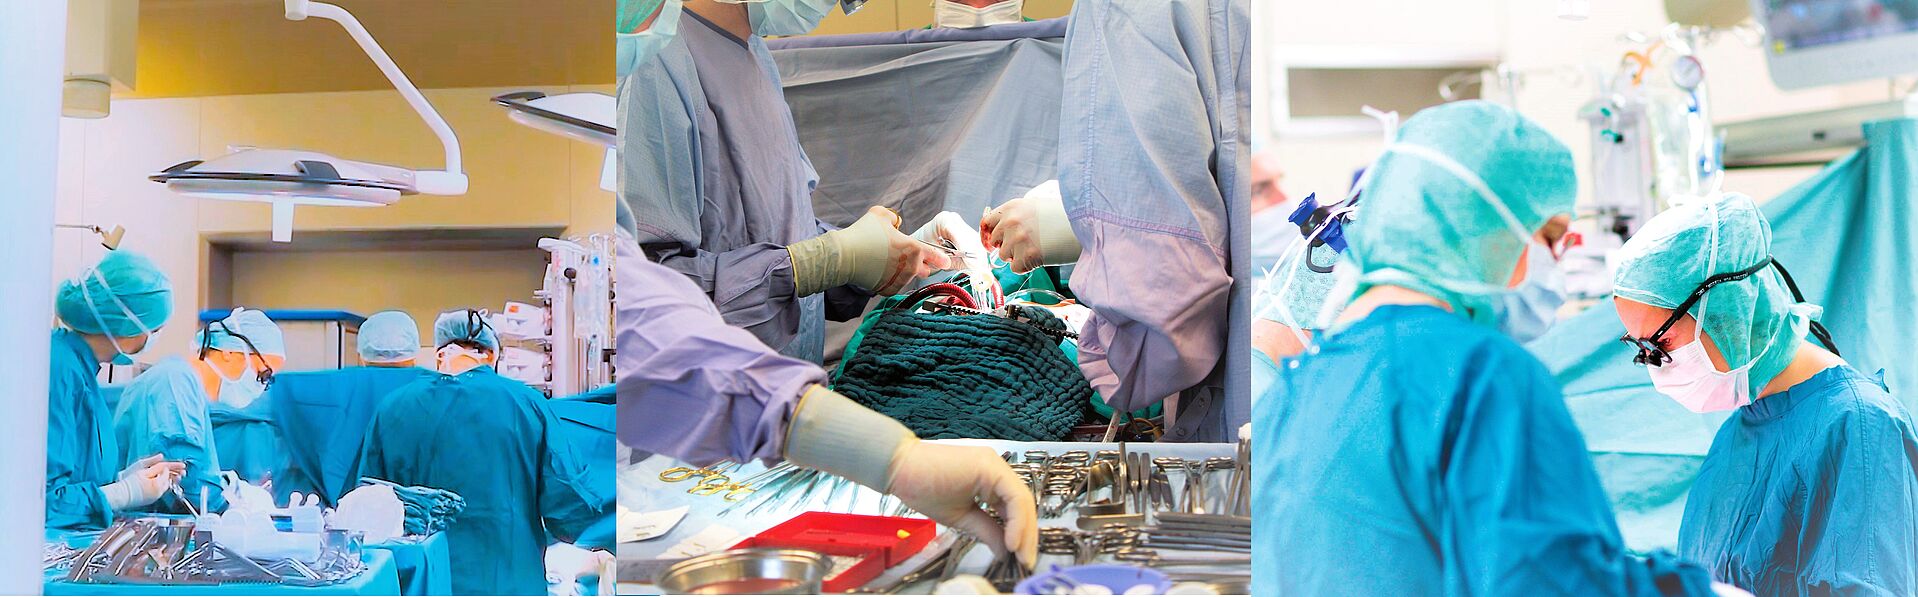 Organspende - Transplantation an der Kerckhoff-Klink